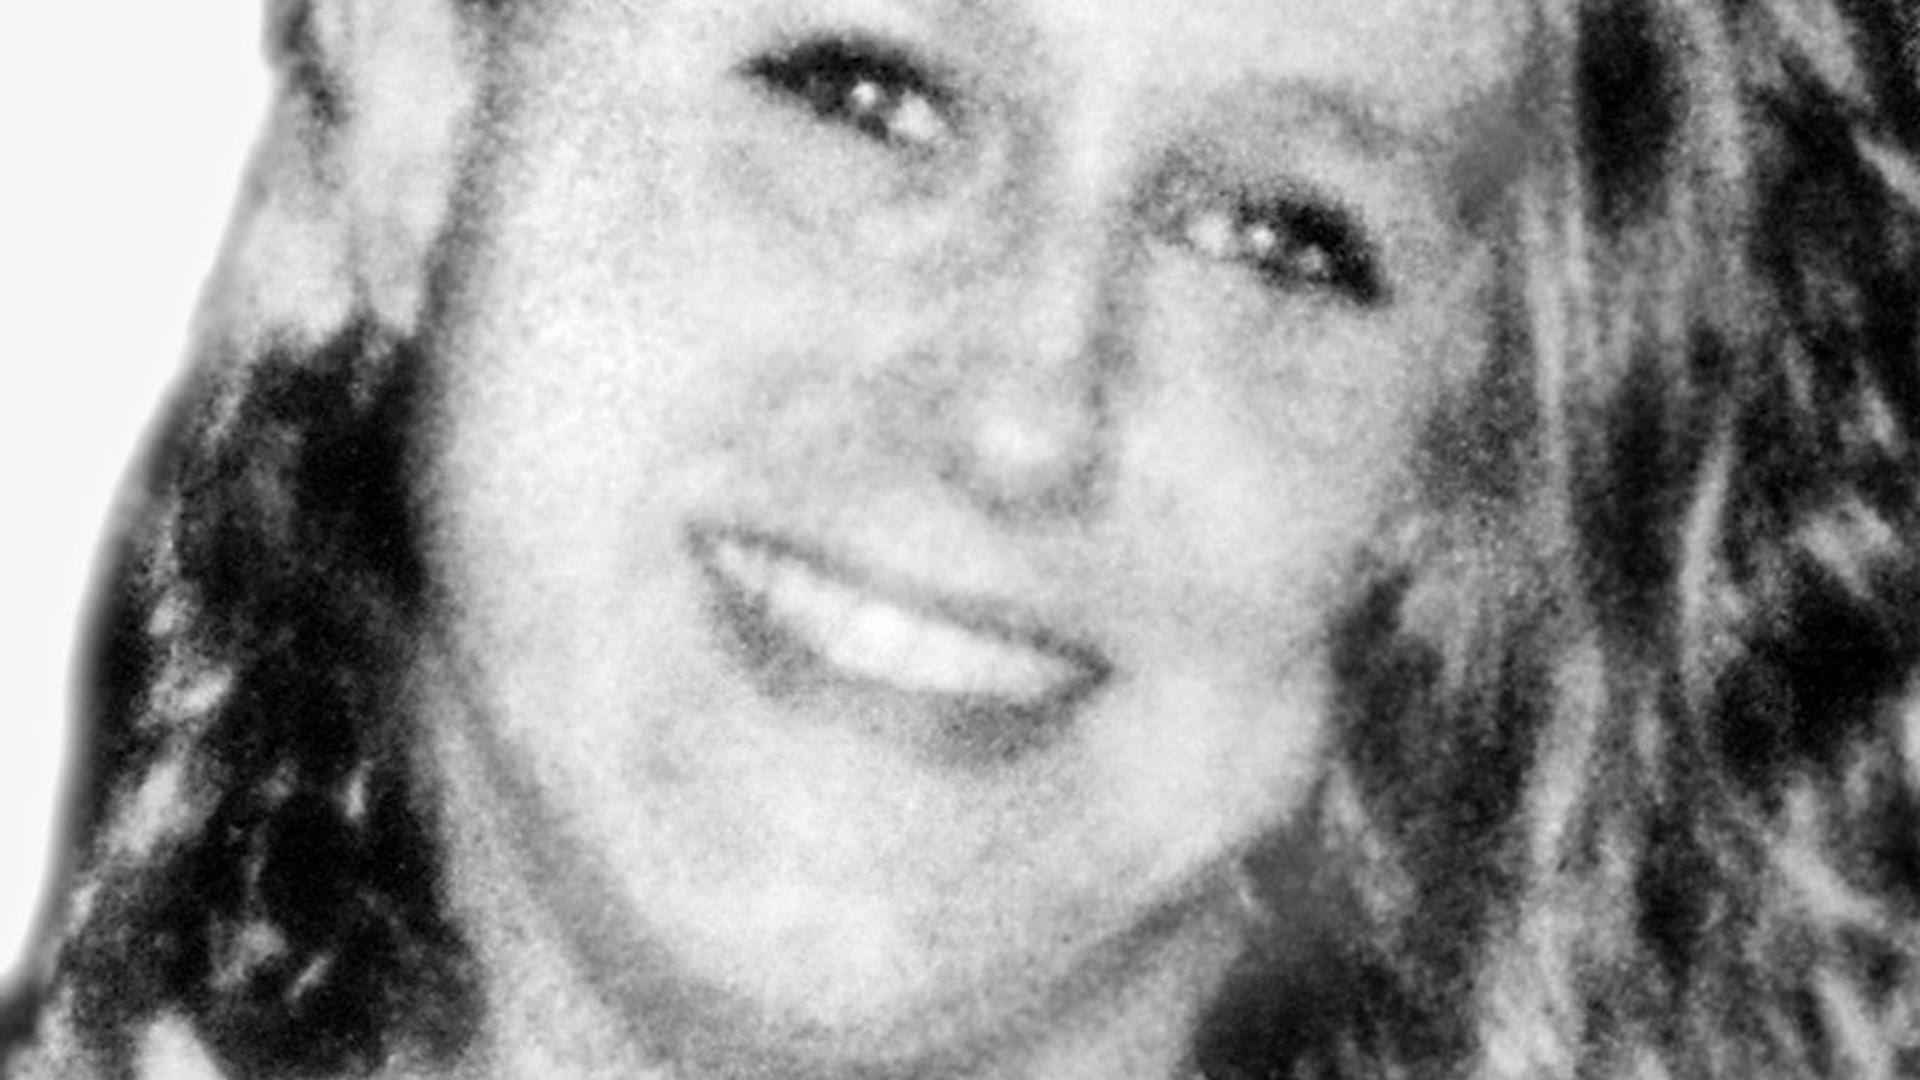 Cindy Koch war im August 1997 nach einem Disko-Besuch ermordet in ihrer eigenen Wohnung aufgefunden worden.